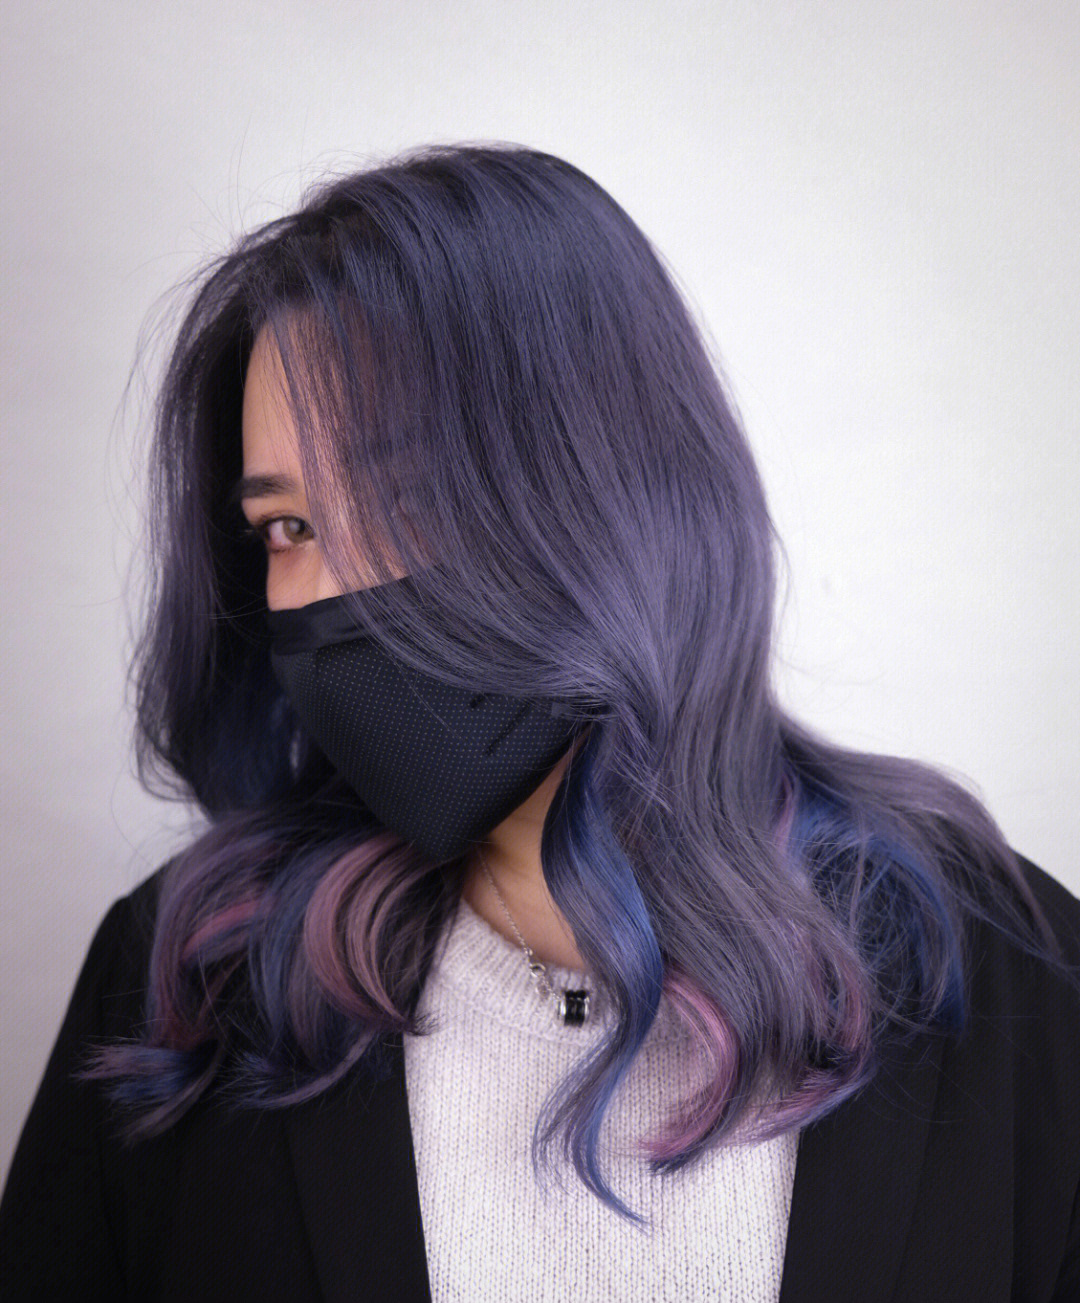 头发超级显白,蓝紫色调会越掉越好看刚染出的蓝紫色超酷后期掉色成